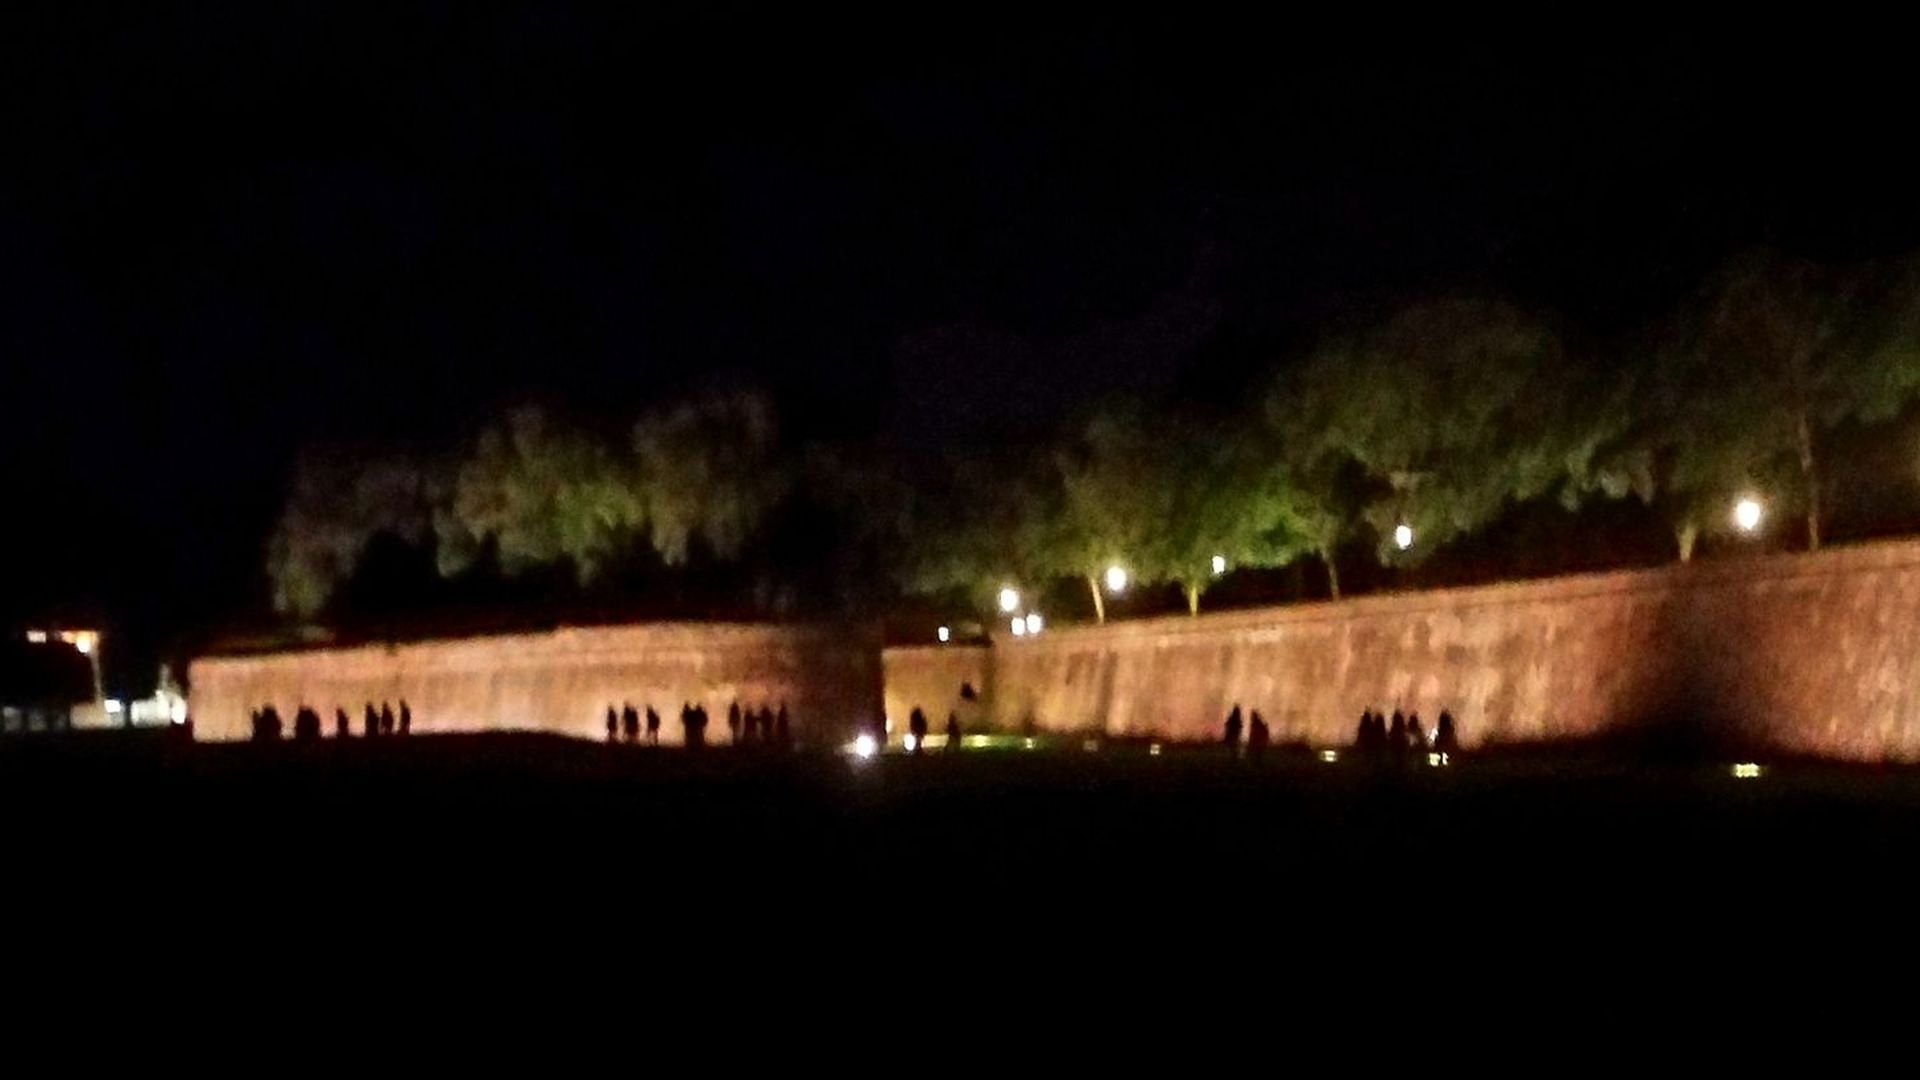 along luca's walls at night